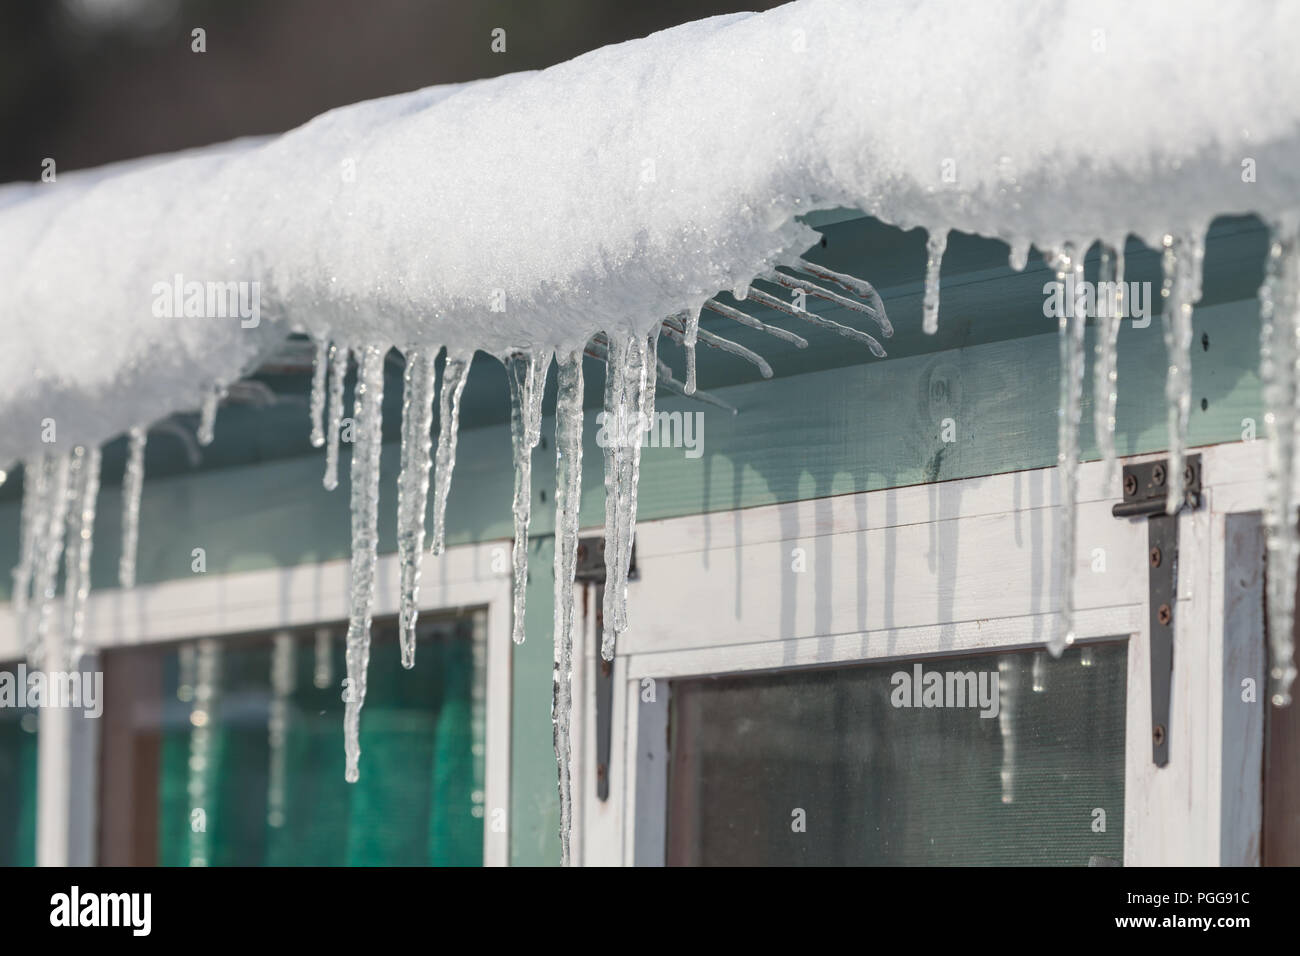 Schnee und Eiszapfen hängen von einer Dachrinne in eisige Winter Bedingungen in England während das Tier aus dem Osten Sturm. Gartenhaus in der Nähe des gefrorenen w Stockfoto